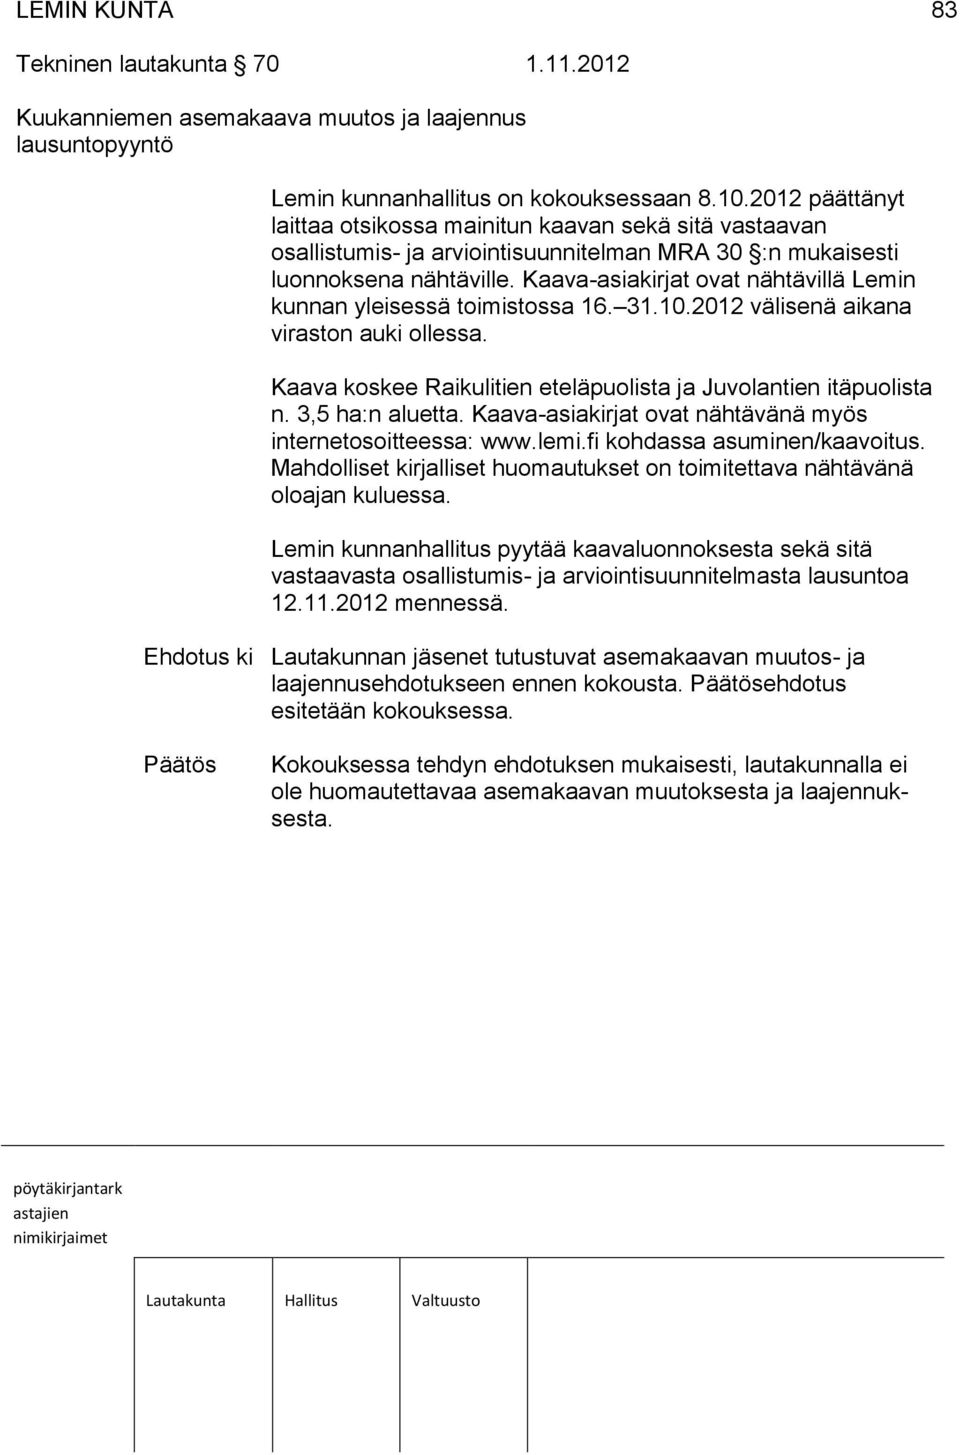 Kaava-asiakirjat ovat nähtävillä Lemin kunnan yleisessä toimistossa 16. 31.10.2012 välisenä aikana viraston auki ollessa. Kaava koskee Raikulitien eteläpuolista ja Juvolantien itäpuolista n.